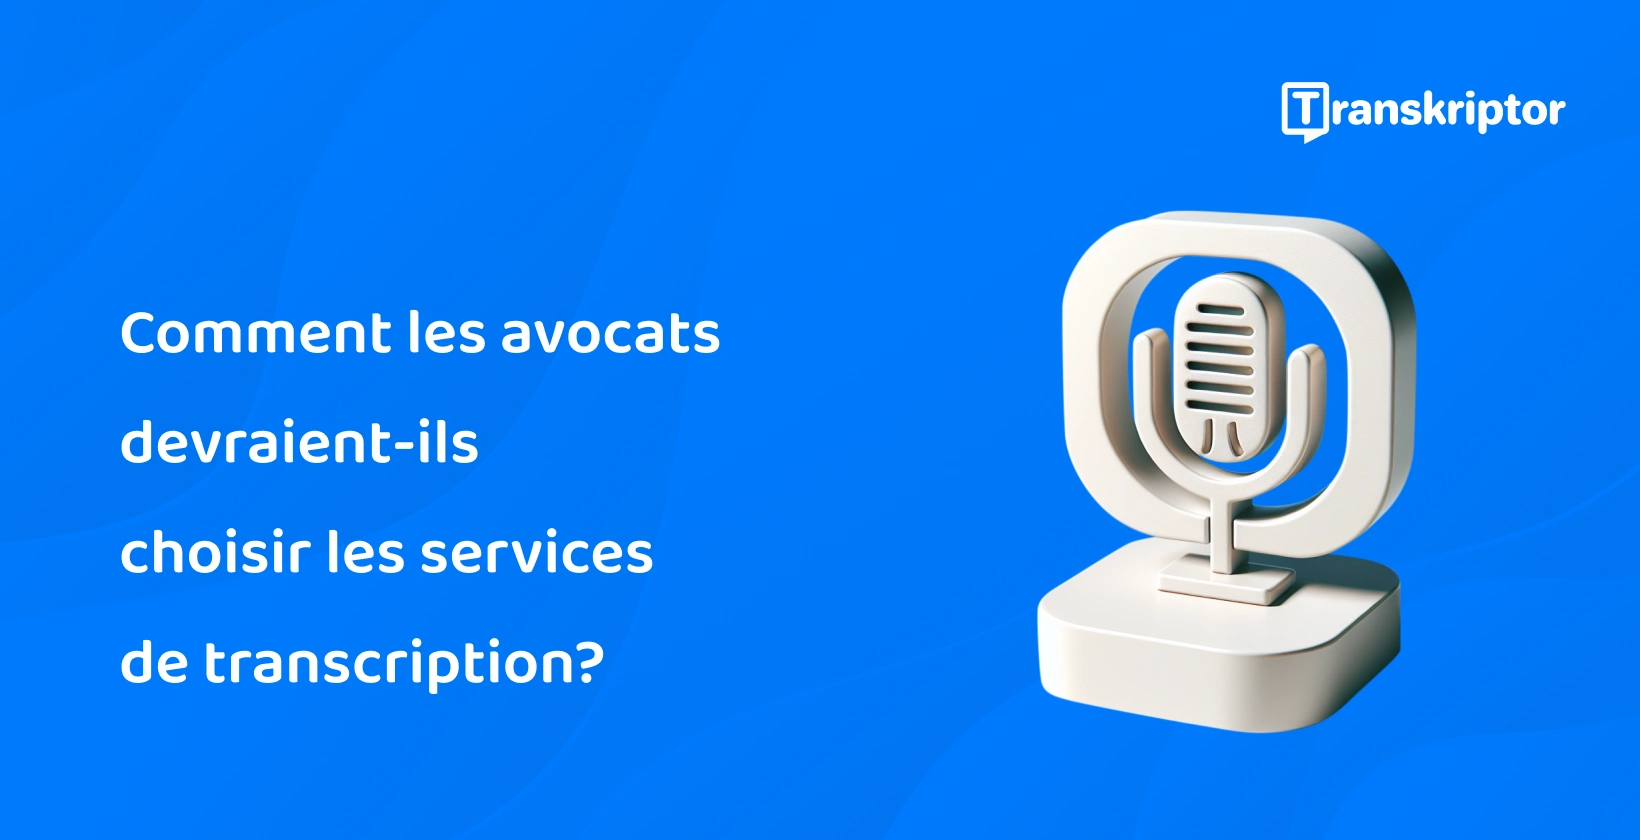 Services de transcription pour les professionnels du droit présentés avec une icône de microphone.